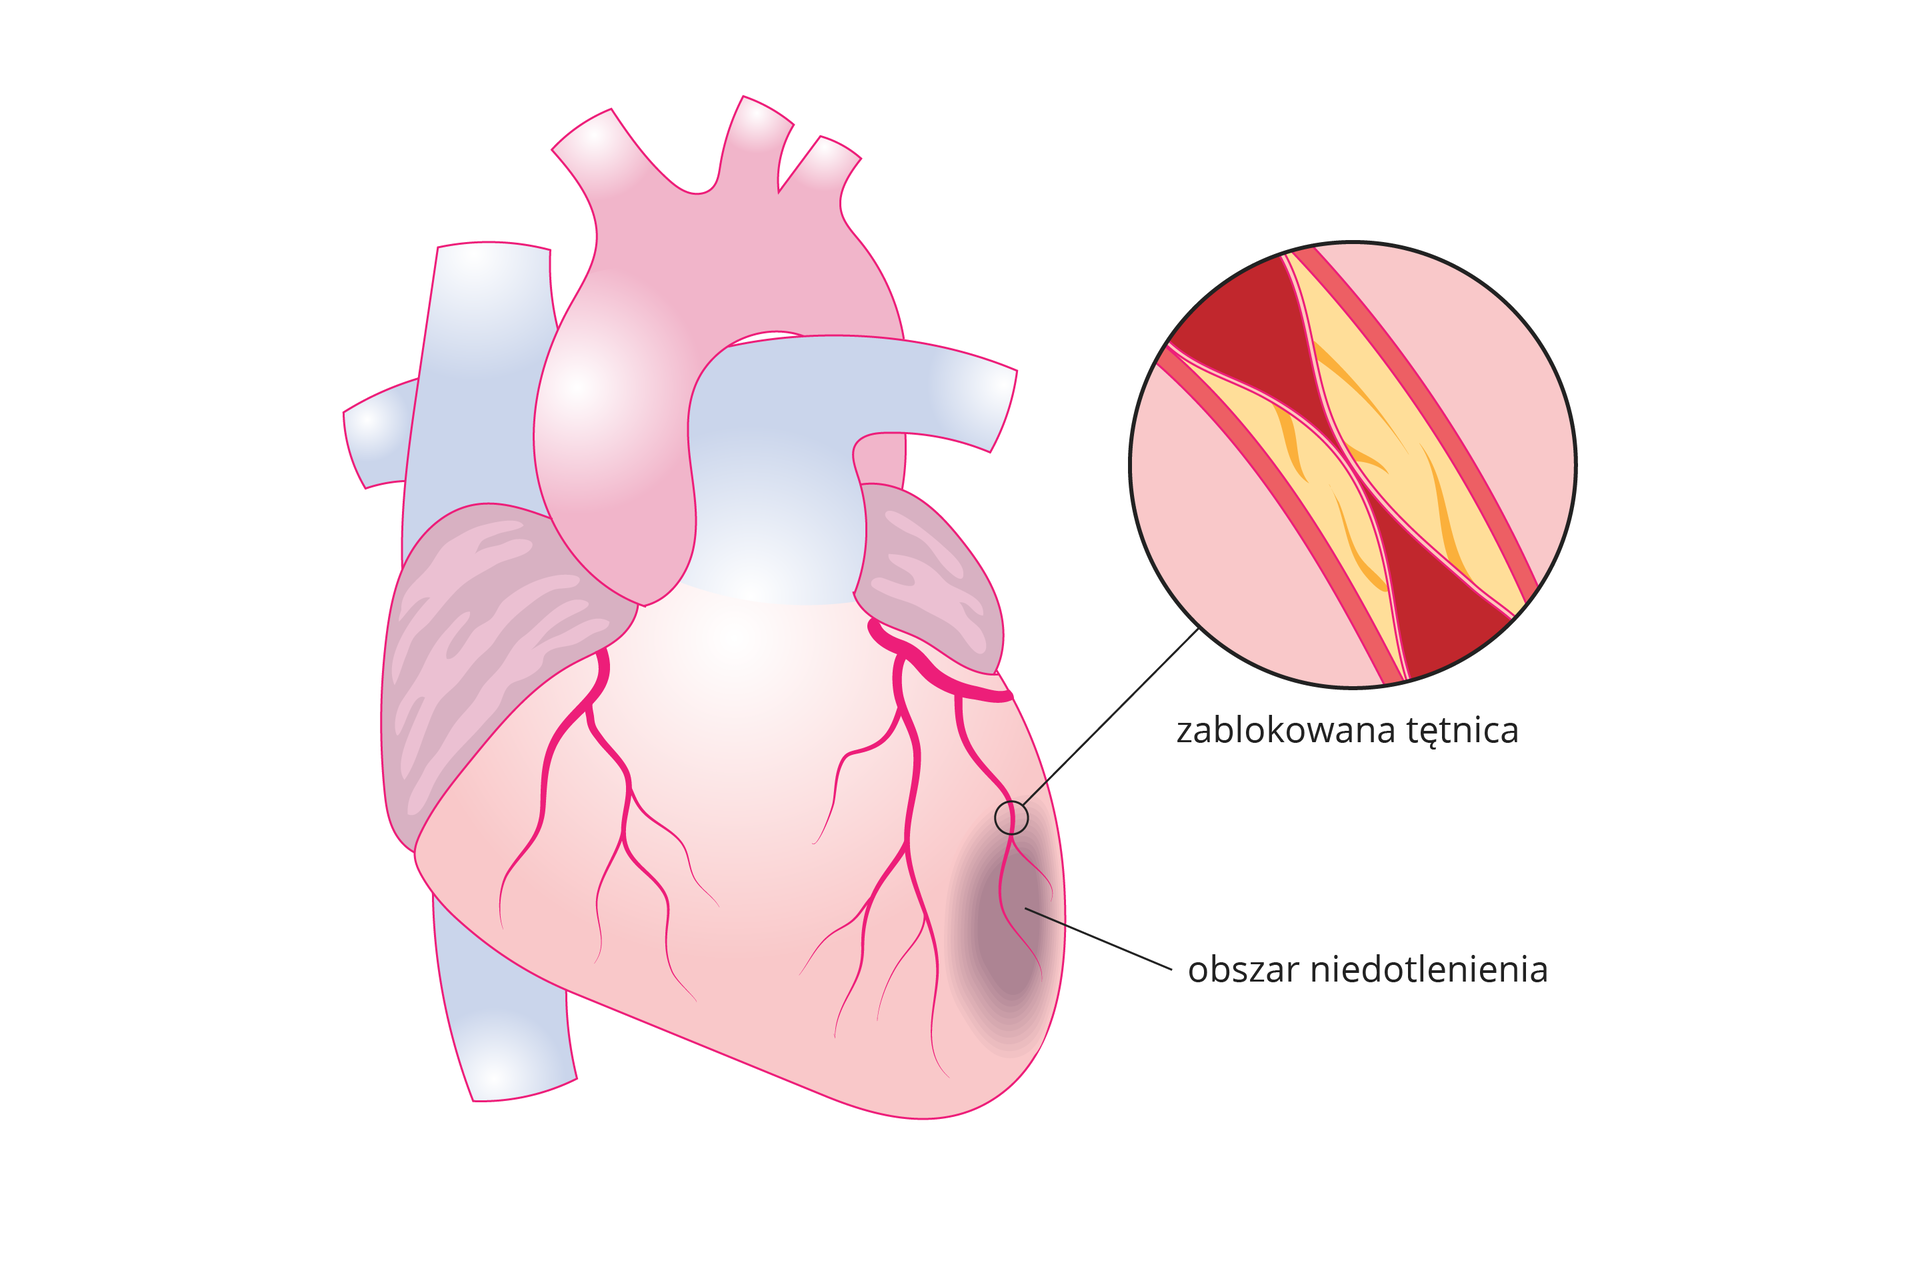 Ilustracja przedstawia schematyczny rysunek serca wraz z obrazem fragmentu tętnicy w zbliżeniu. Powierzchnia serca jest różowa, a tętnice oraz żyły łączące się z sercem są błękitne. W górnej części serca mieści się aorta. Powierzchnię serca tworzą czerwone naczynia krwionośne, które rozgałęziają się ku dołowi. Zaznaczony na obrazie fragment tętnicy w zbliżeniu znajduje się po prawej stronie w kole z czarną obwódką. Pokazano na nim, że tętnica jest zablokowana złogami cholesterolu do poziomu uniemożliwiającego swobodny przepływ krwi. Poniżej zwężonej tętnicy zaznaczono ciemną owalną plamą obszar niedotlenienia mięśnia sercowego.